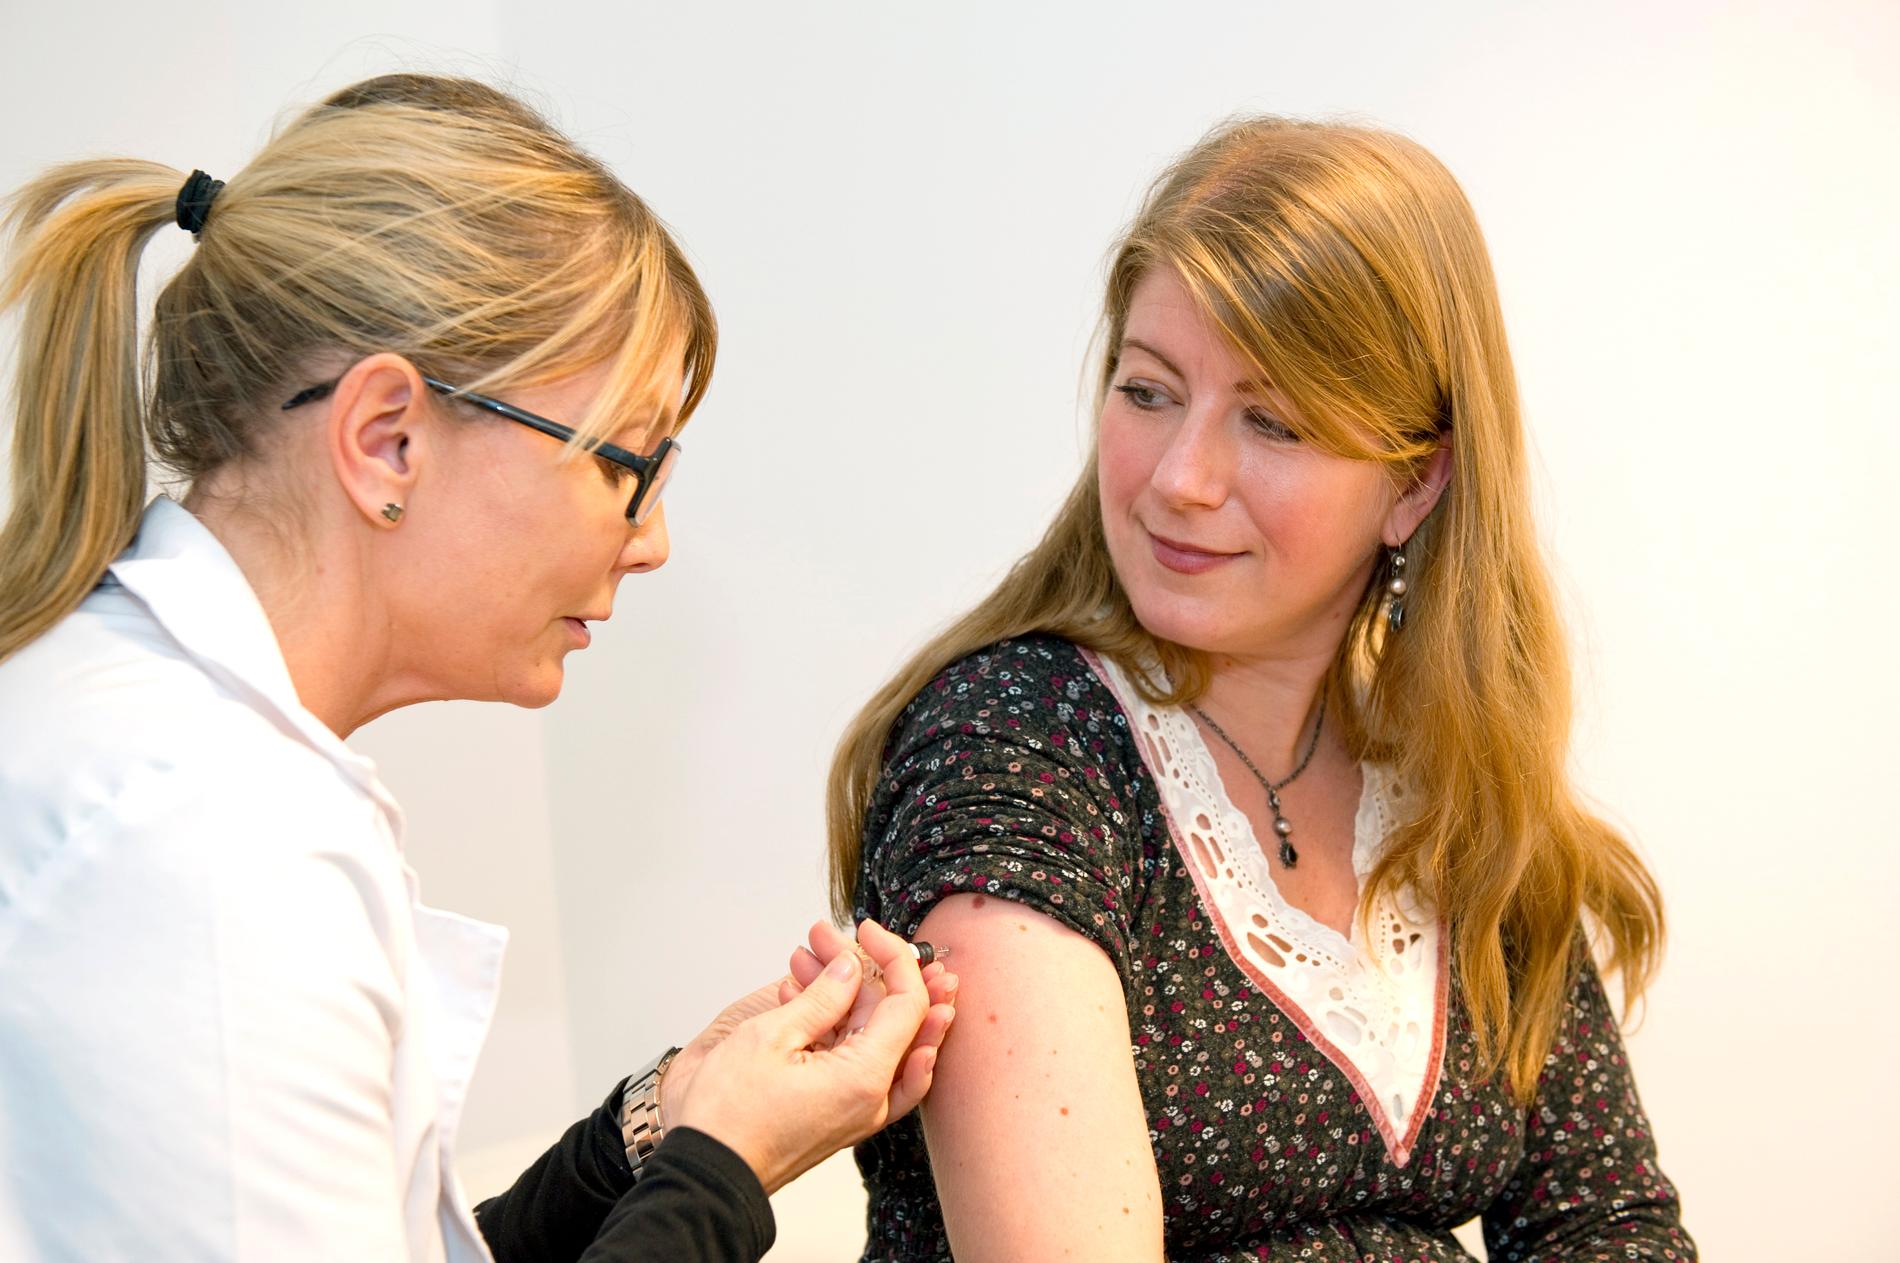 Aftonbladets reporter vaccinerar sig mot influensan. Men svenskarna är tveksamma.